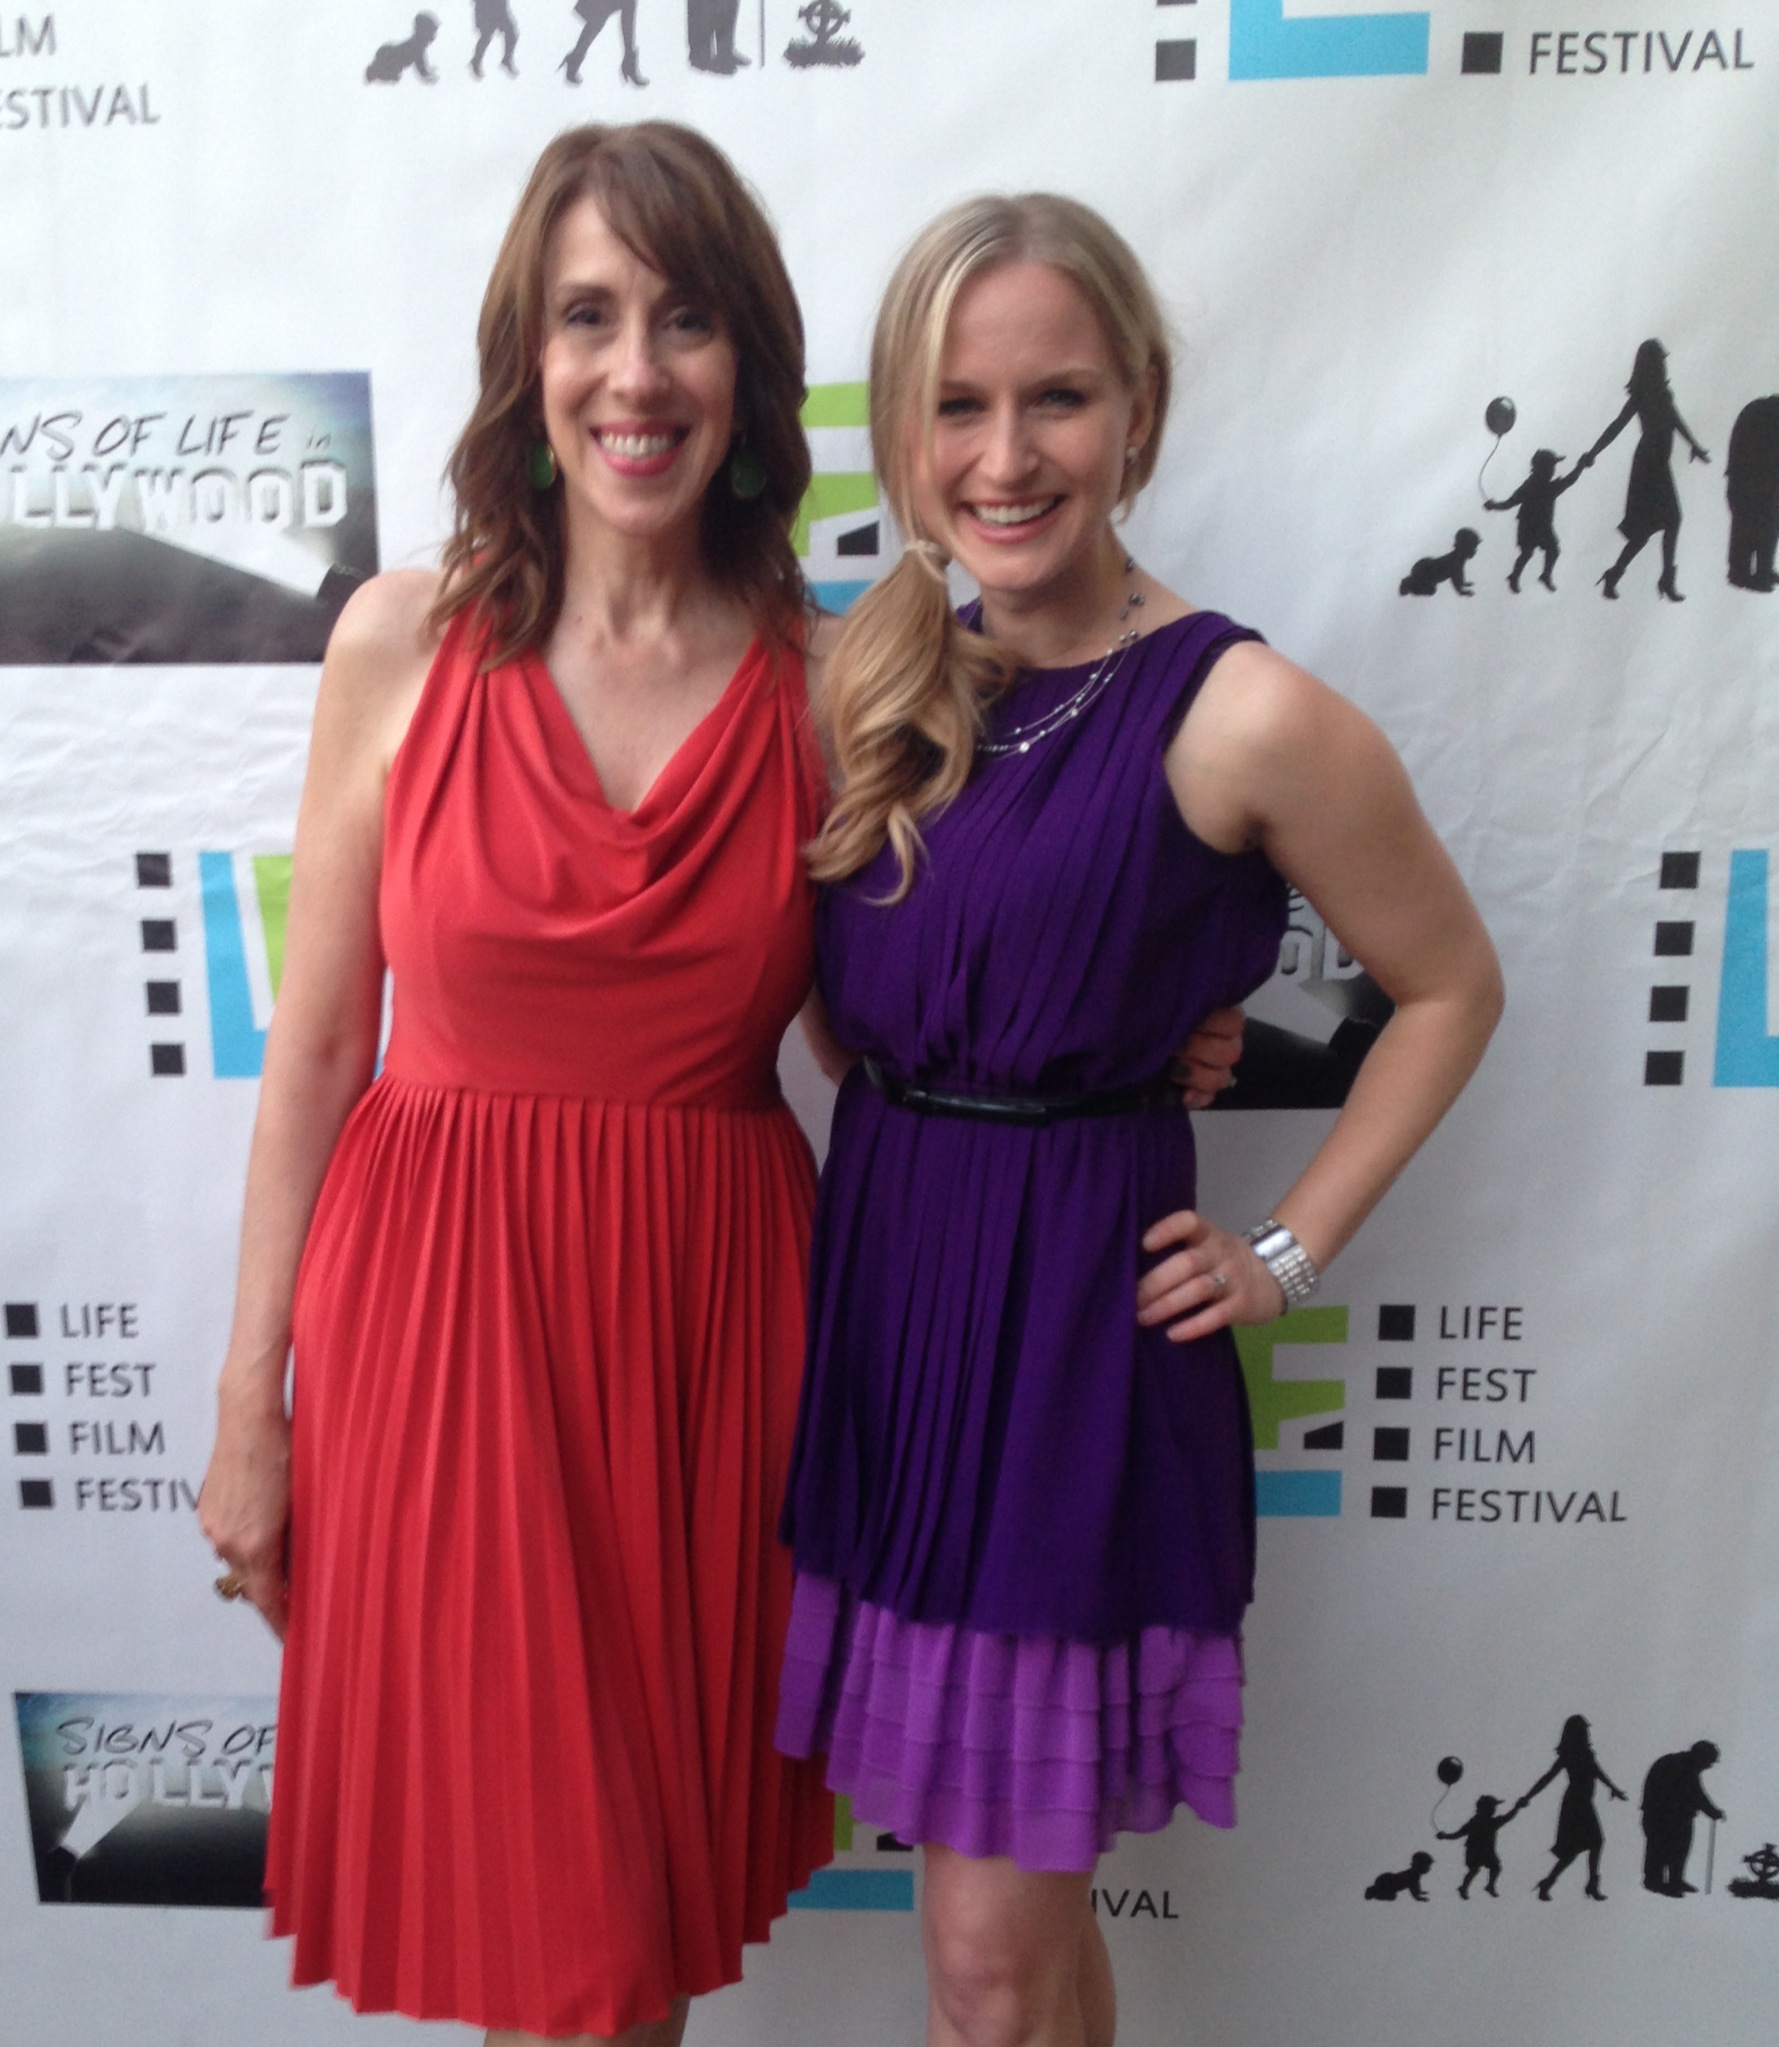 With Jenn Gotzen at LifeFest 2013 Hollywood